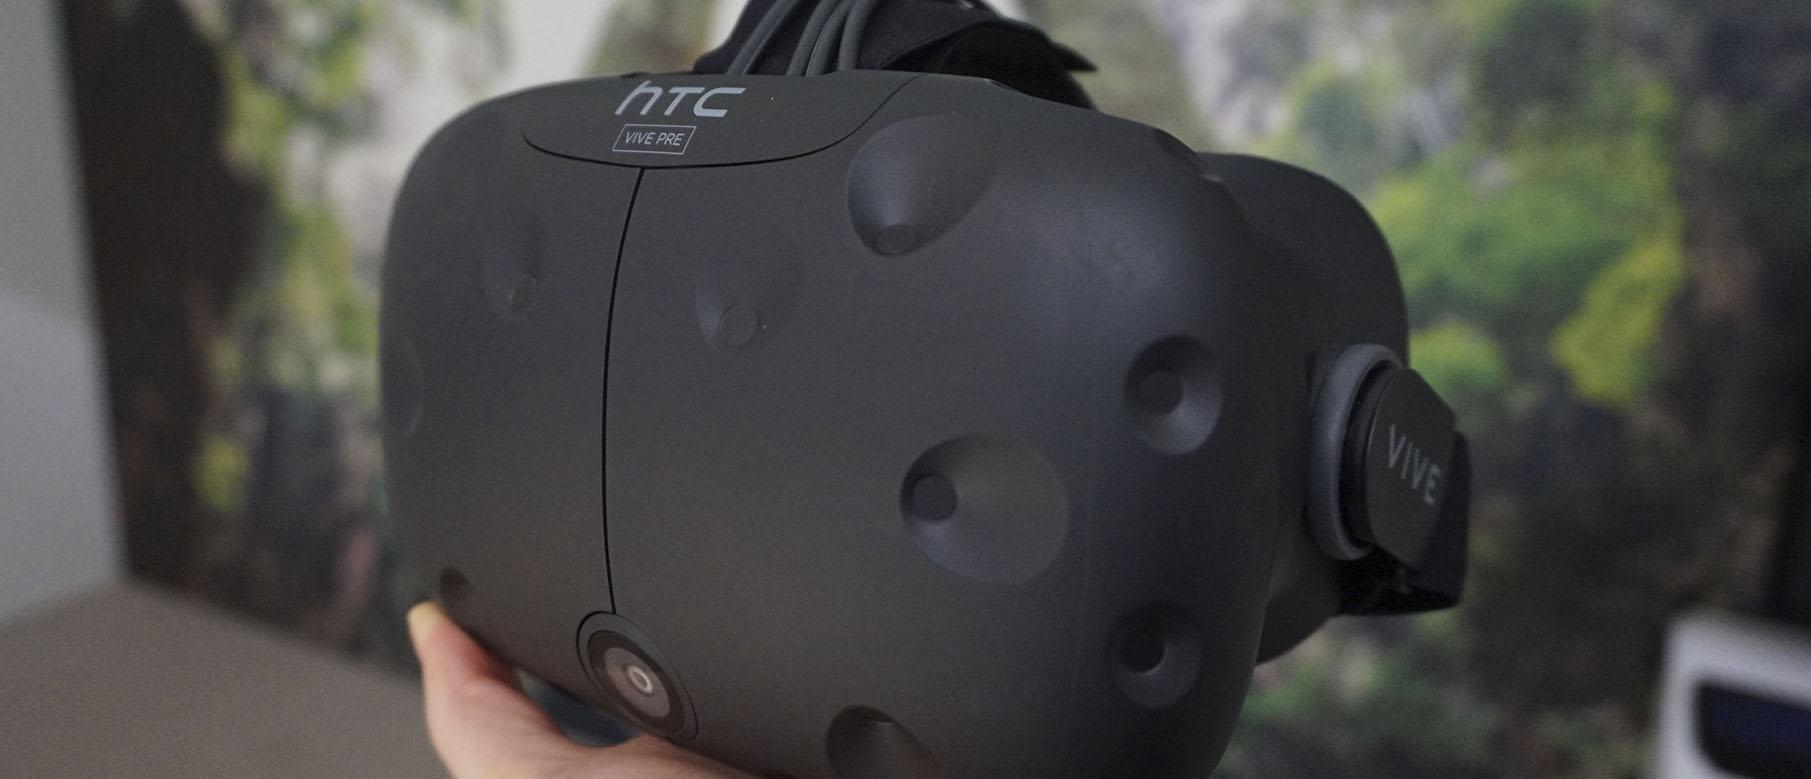 Изображение к Виртуальная реальность все ближе: в Steam новые опции для VR